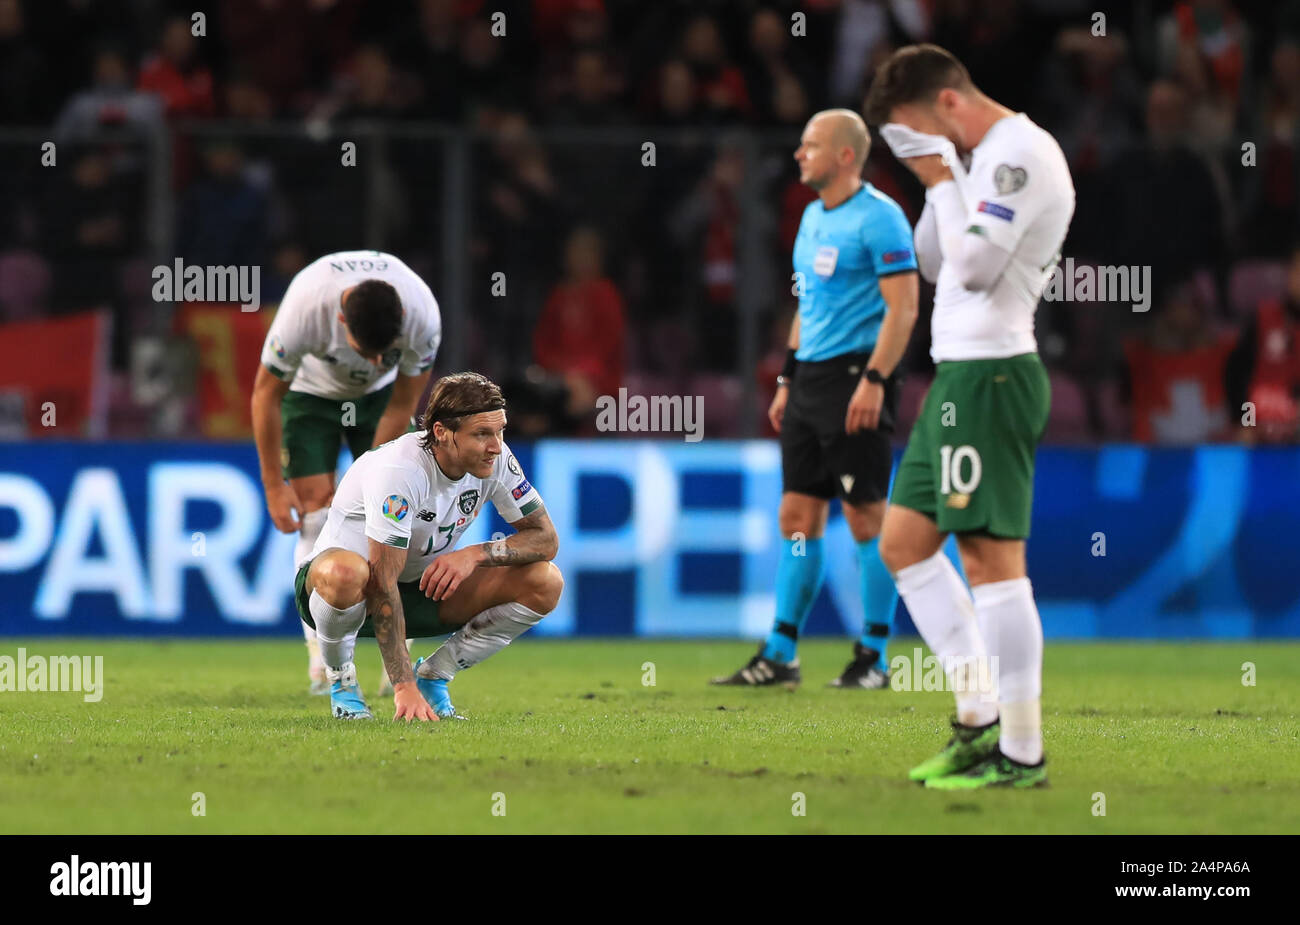 Repubblica di Irlanda Jeff Hendrick guarda sconsolato alla fine della partita durante UEFA EURO 2020 qualifiche corrispondano allo Stade de Geneve Ginevra. Foto Stock